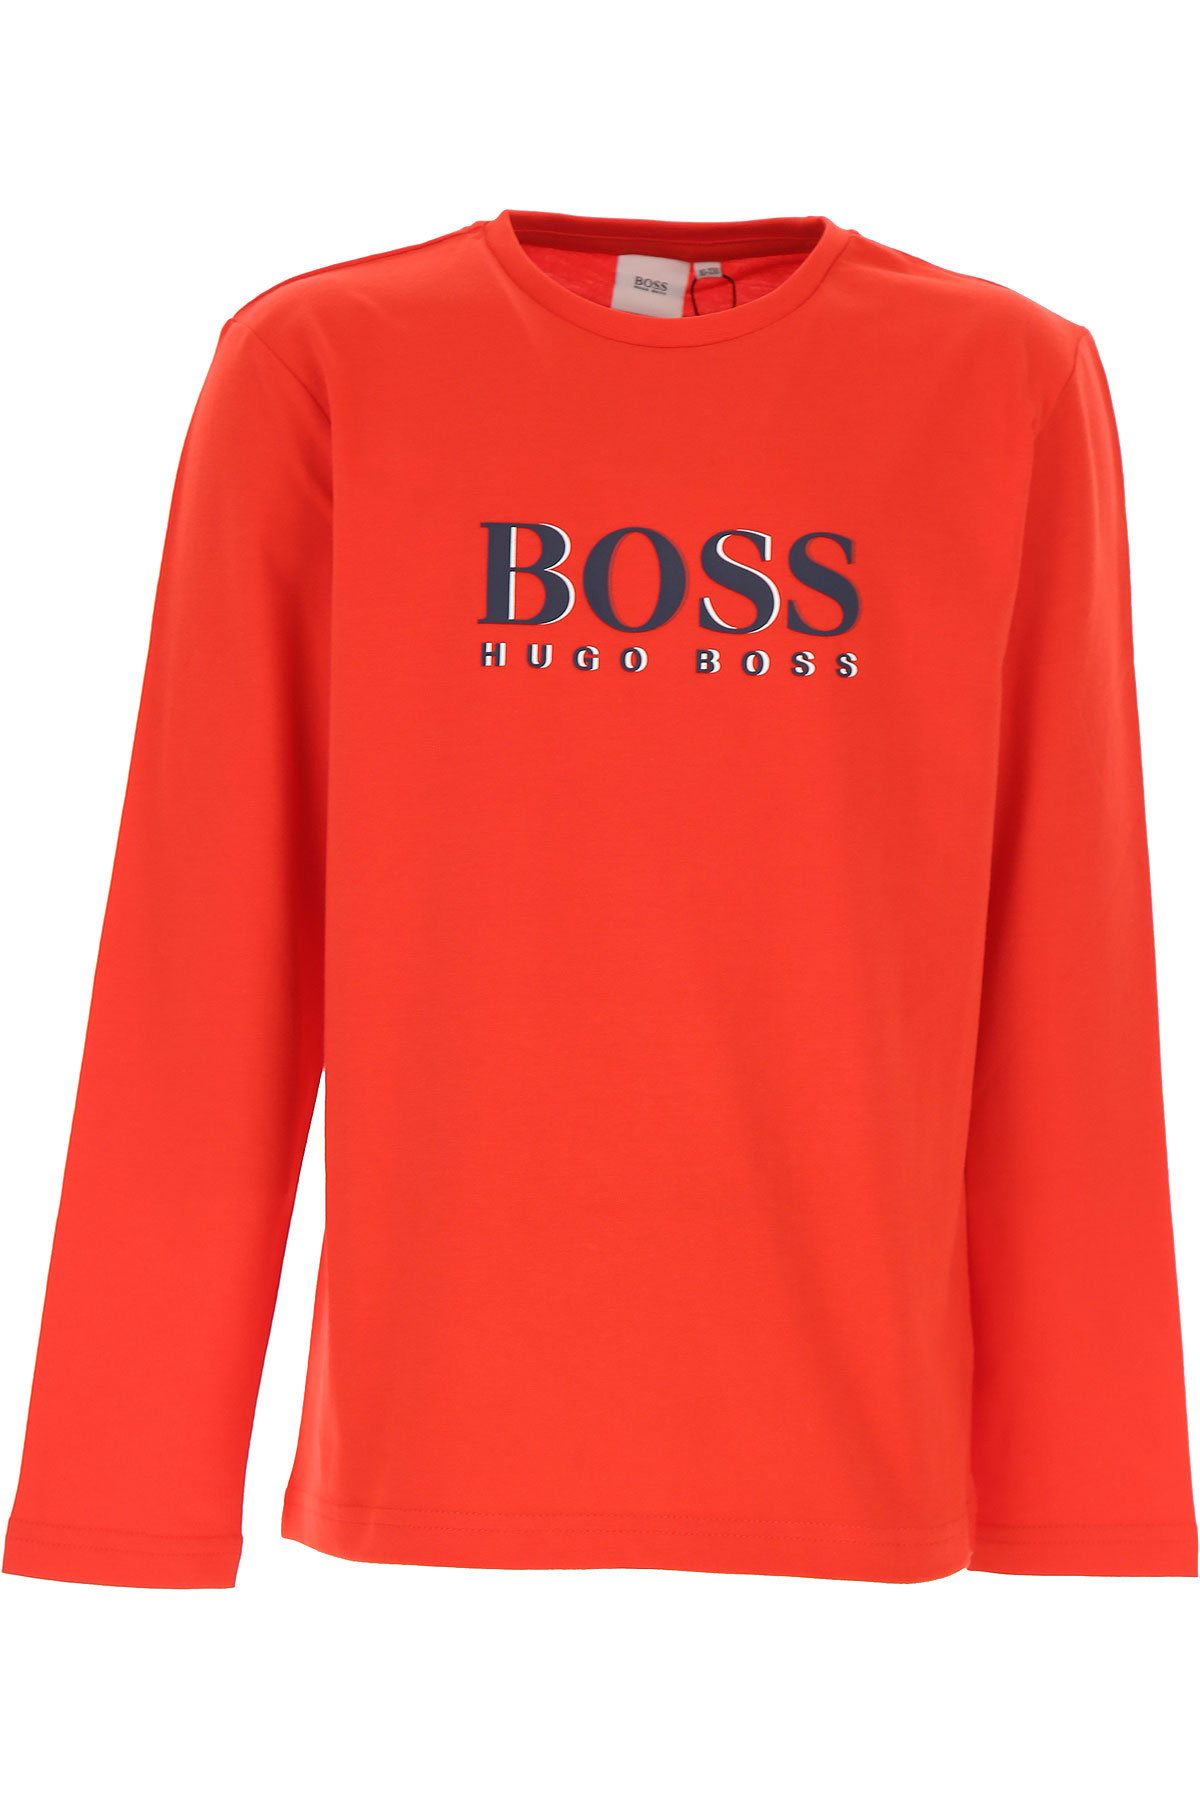 Hugo Boss Kinder T-Shirt für Jungen Günstig im Sale, Rot, Baumwolle, 2017, 14Y 16Y 4Y 5Y 6Y 8Y